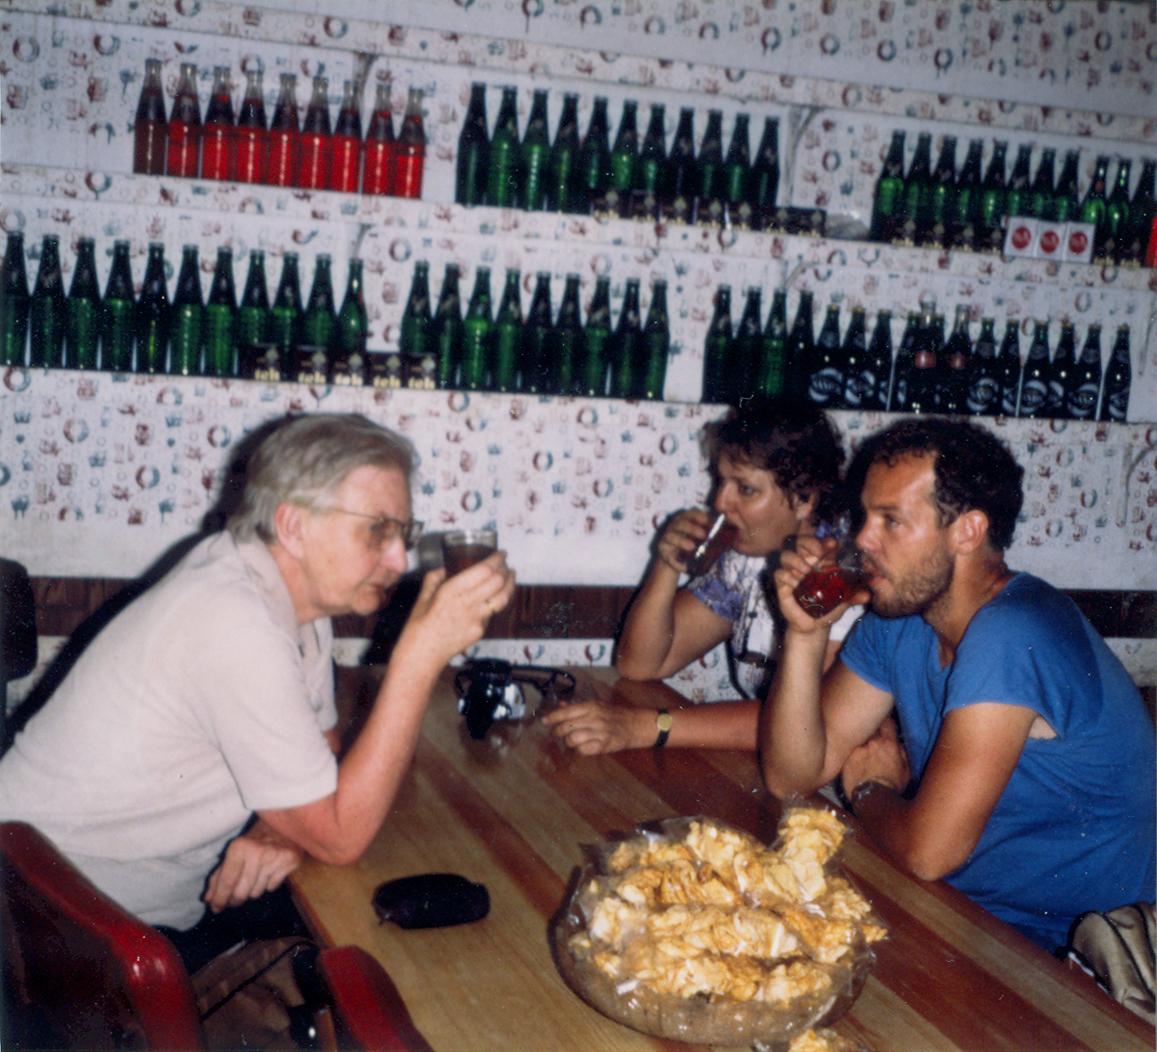 BD/309/75 - 
Dorp Bogor, westerse oudere man en jonge man en vrouw drinken wat in gelegenheid. Niet plaatsen, niet in Nieuw Guinea
